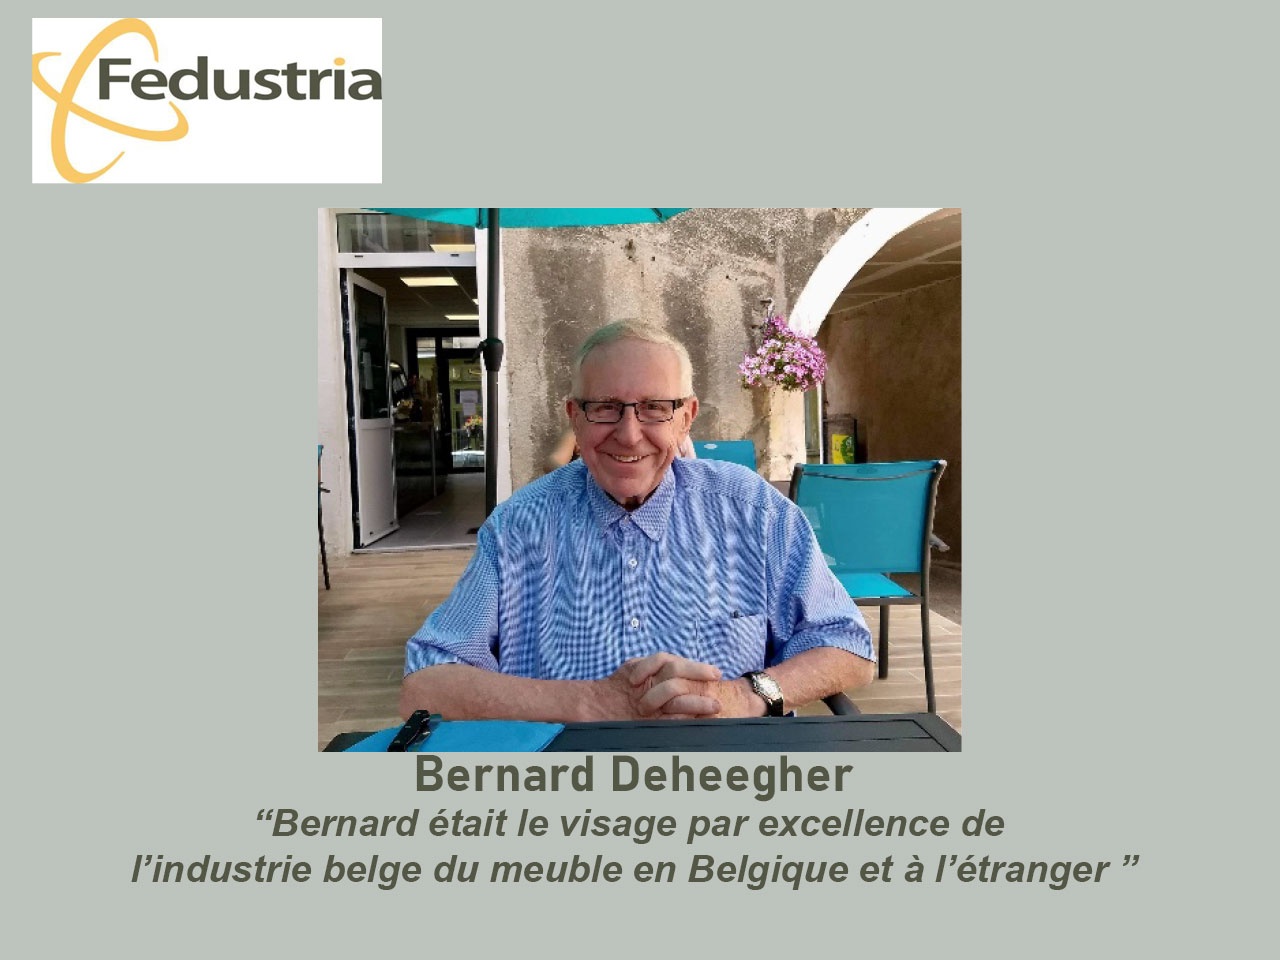 Bernard Deheegher, visage du mobilier belge, est décédé le 13 octobre à l’âge de 70 ans.